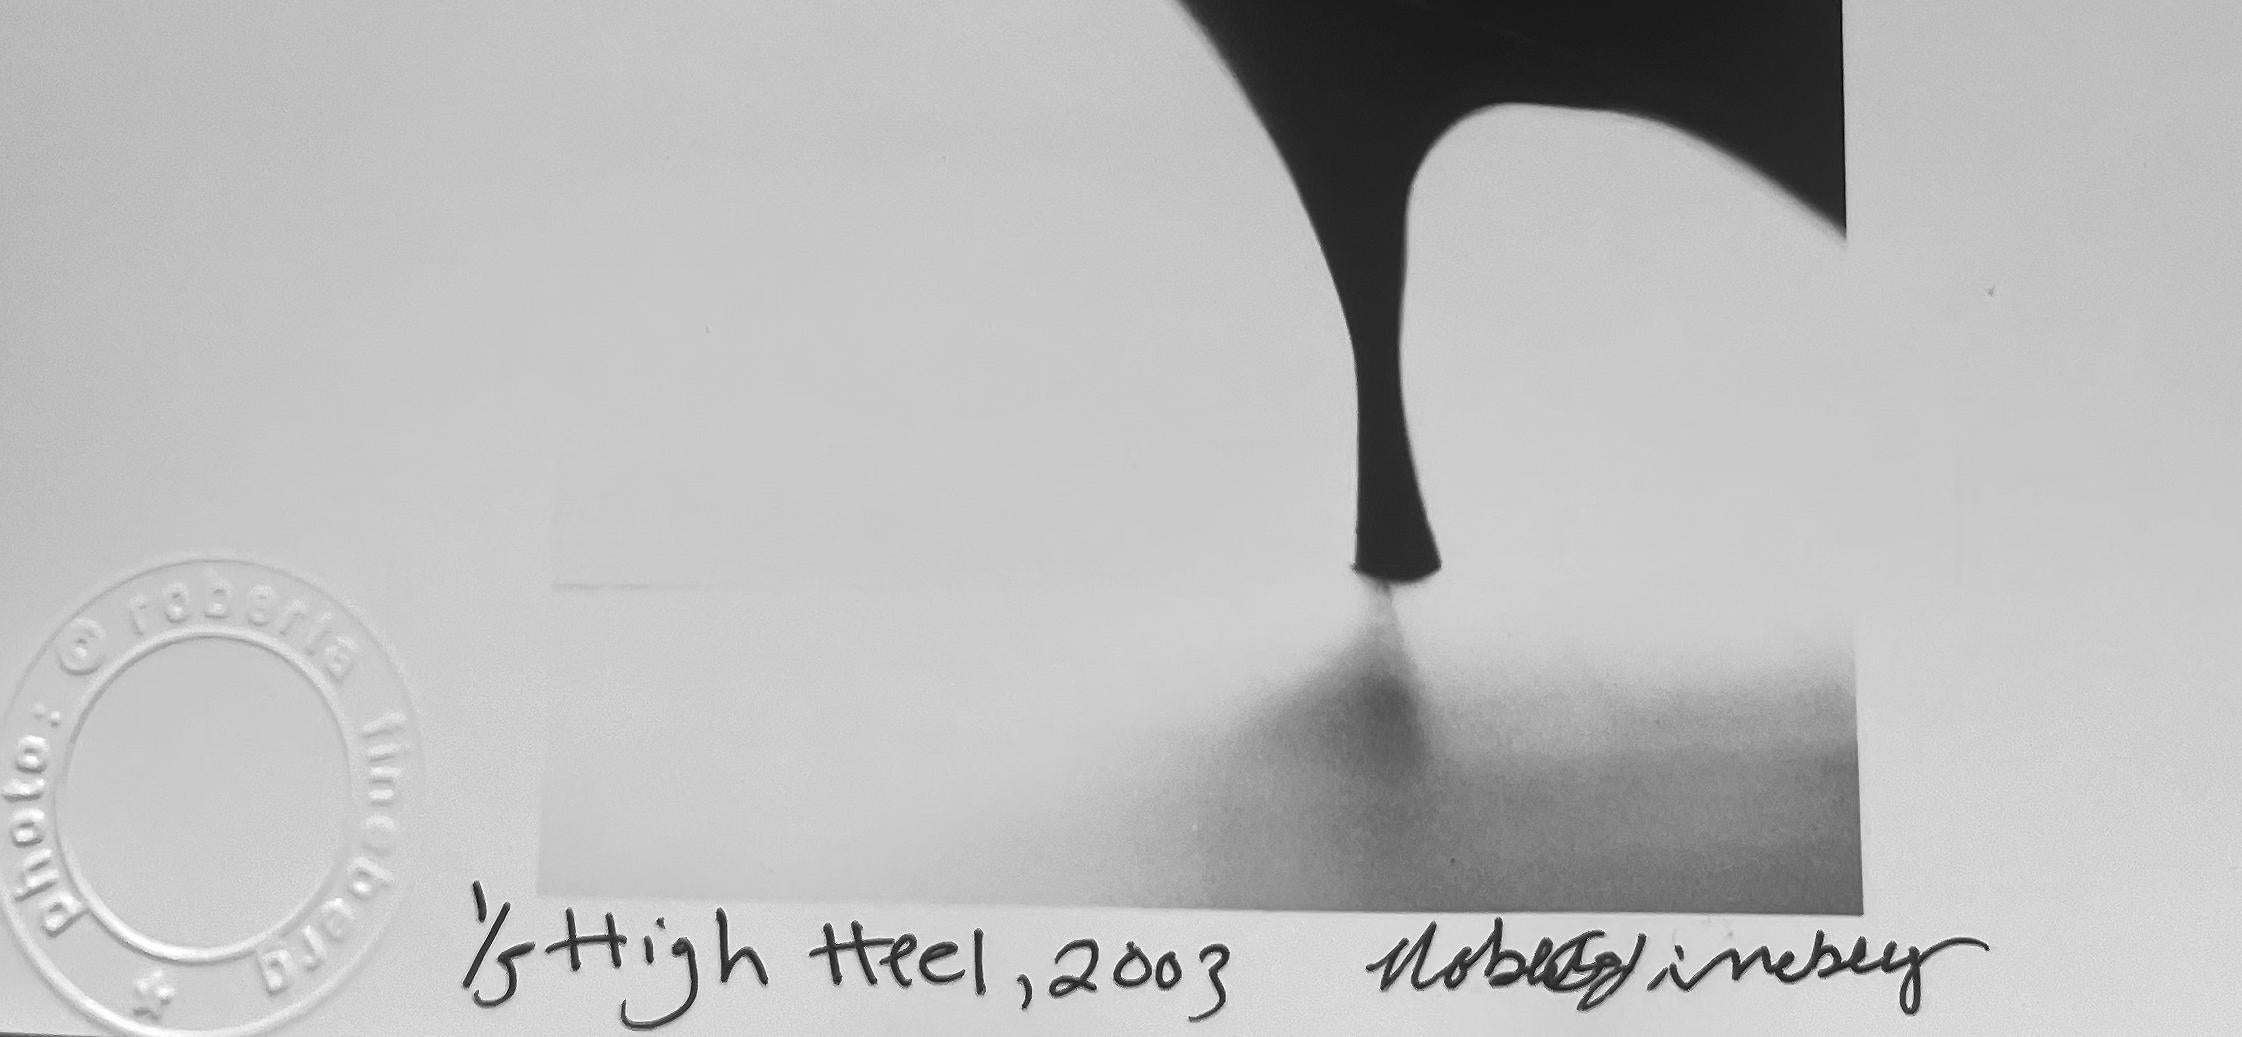 High Heel, Schwarz-Weiß-Fotografie eines Stileto Memento Mori mit hohem Absatz – Photograph von Roberta Fineberg